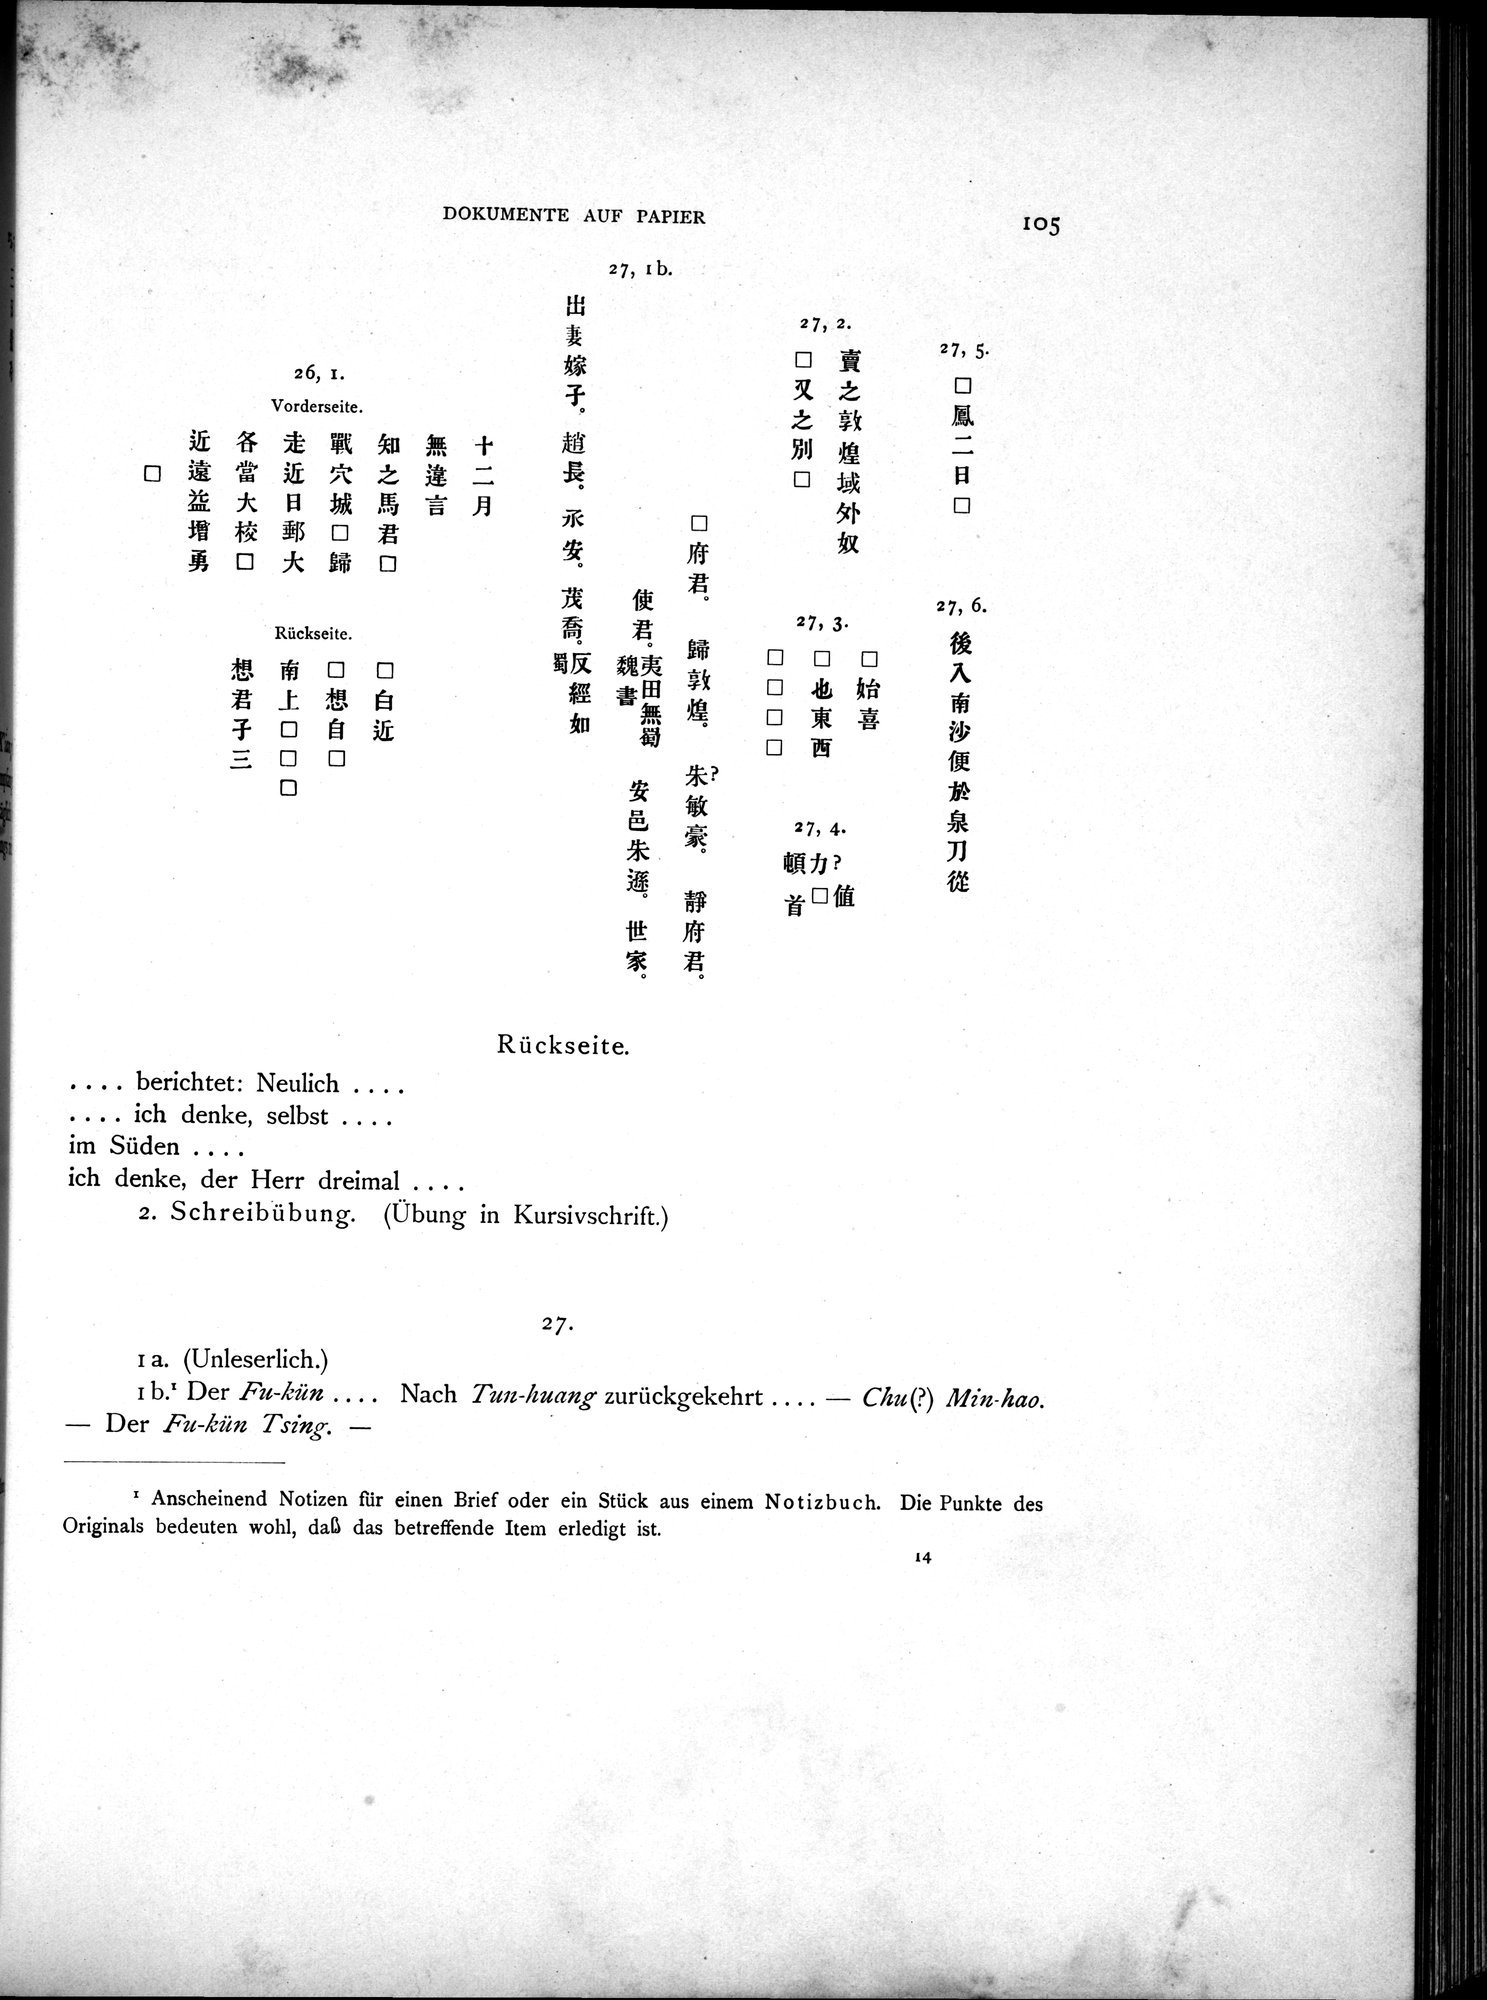 Die Chinesischen Handschriften- und sonstigen Kleinfunde Sven Hedins in Lou-lan : vol.1 / Page 129 (Grayscale High Resolution Image)